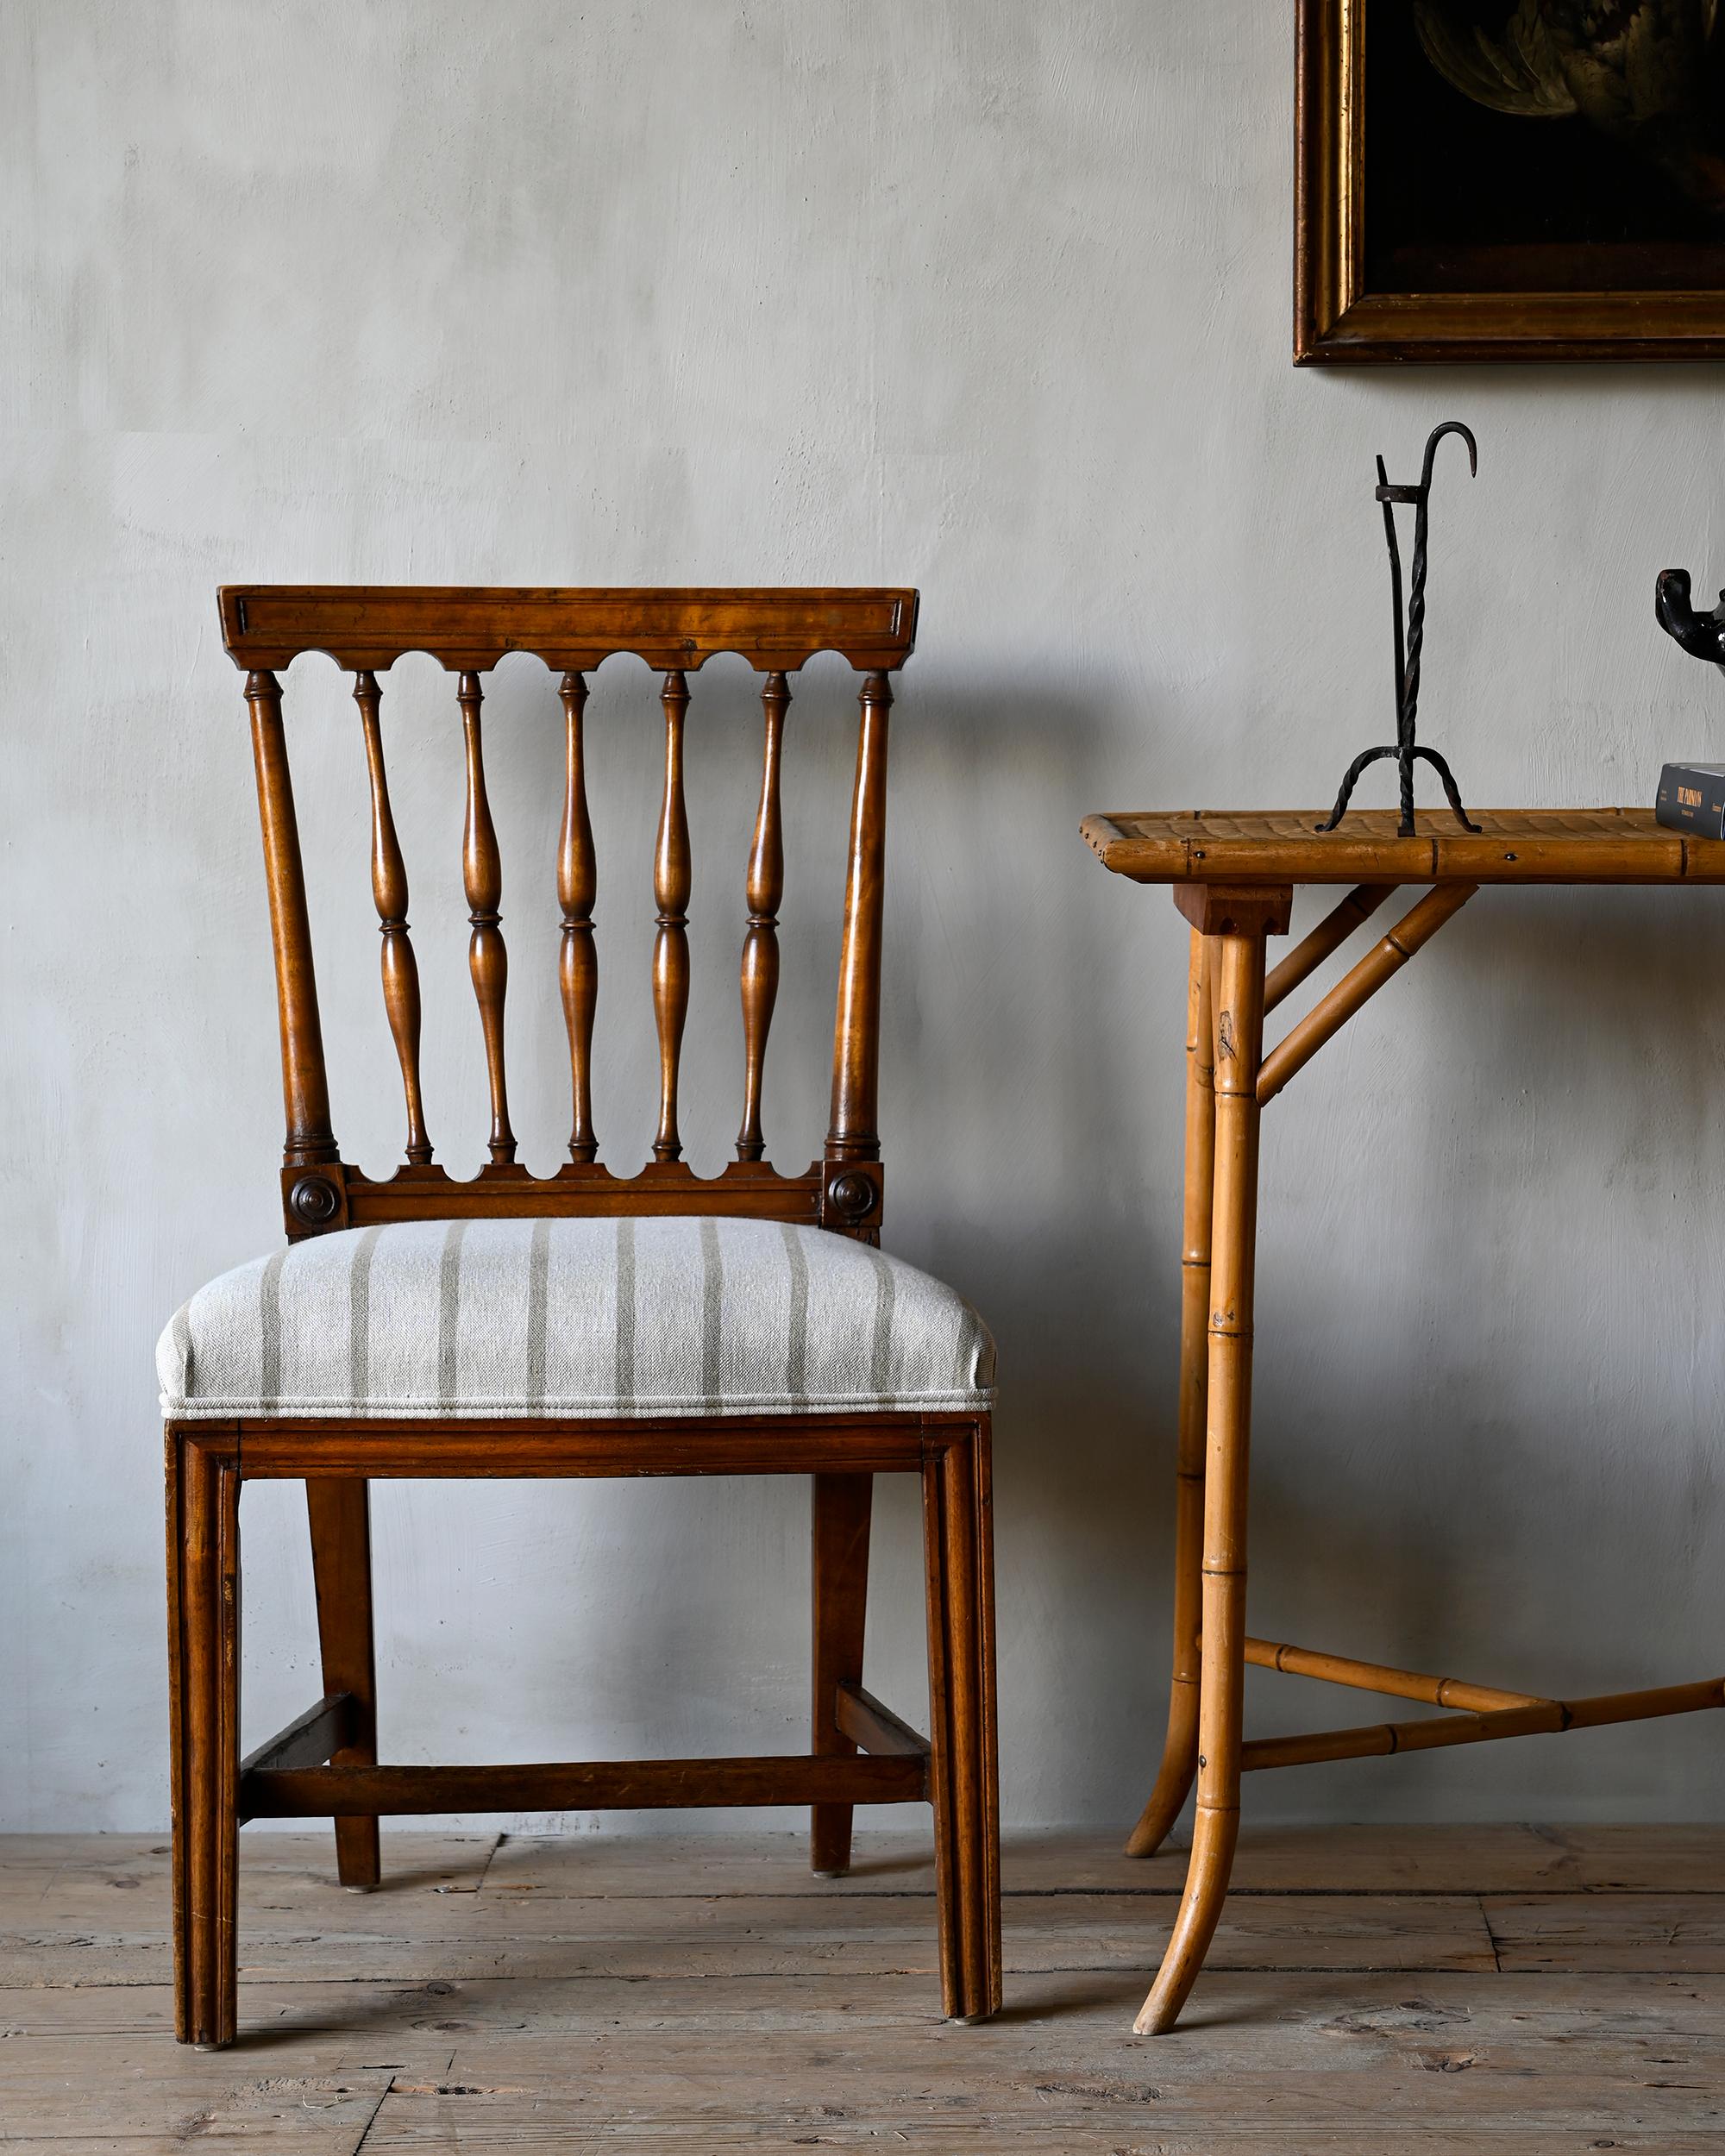 Seltenes und feines Paar gustavianischer Stühle des frühen 19. Jahrhunderts im chinesischen Geschmack, signiert vom Meisterstuhlmacher Ephraim Sthal (1767-1820), Lieferant des königlichen Hofes und einer der raffiniertesten und erfindungsreichsten